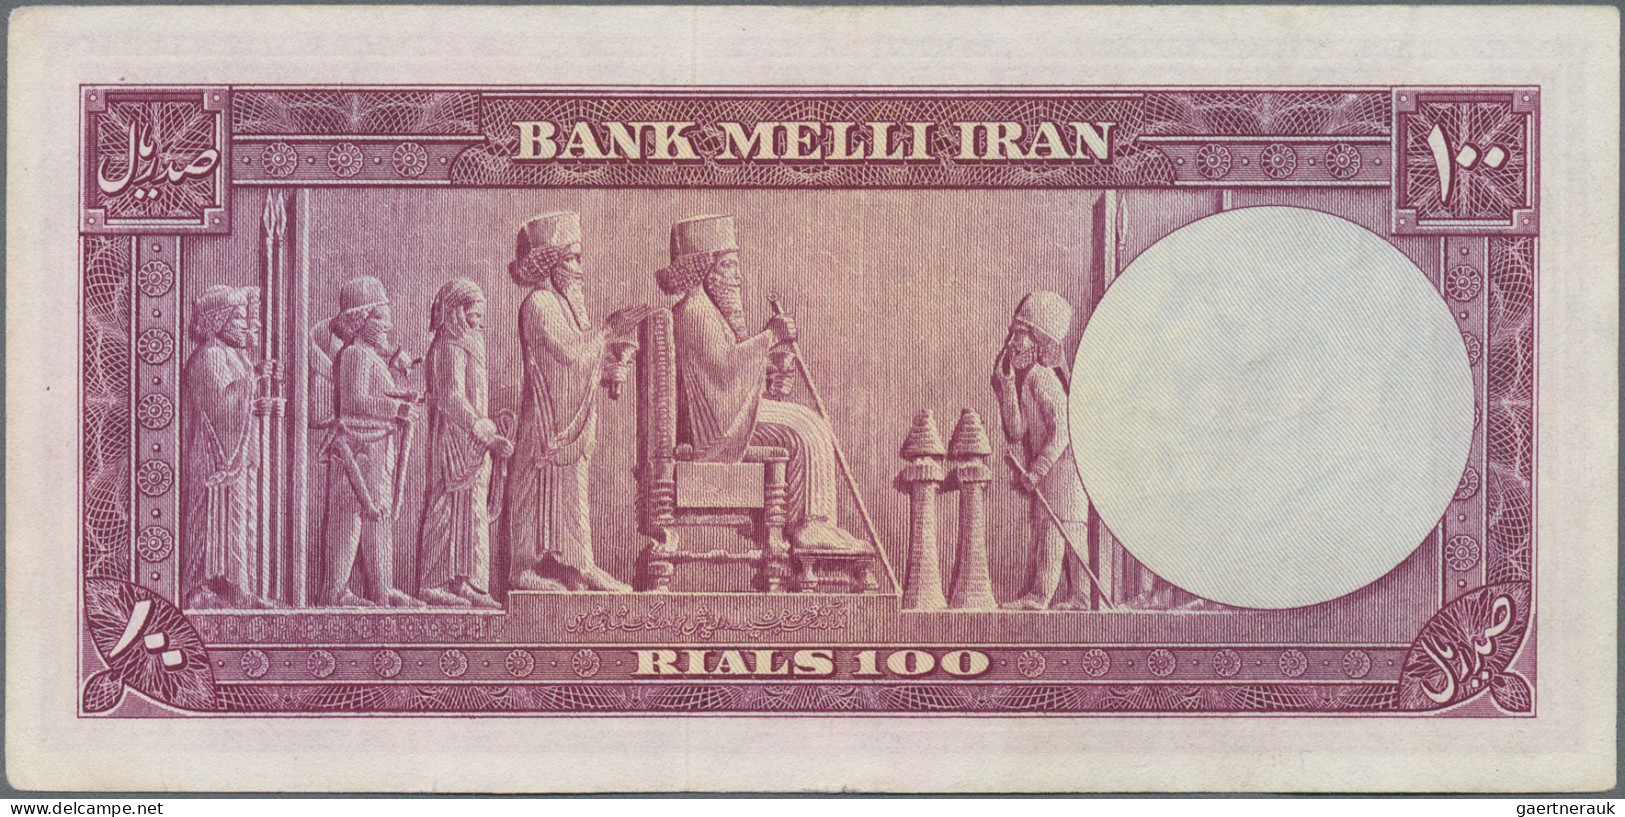 Iran: Bank Melli Iran, huge lot with 16 banknotes series 1951-1958, comprising 1